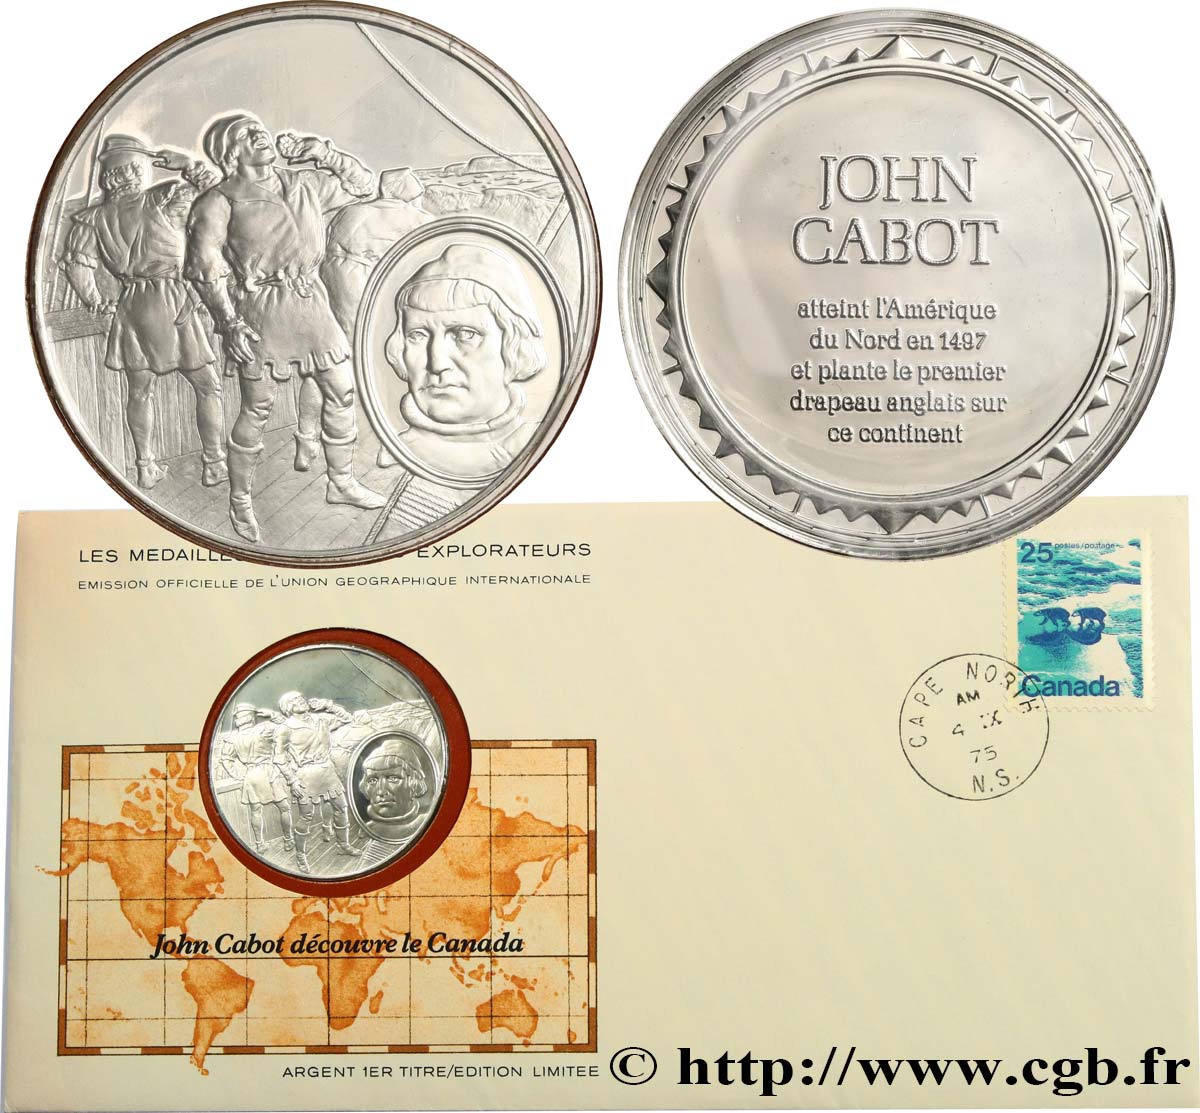 THE GREAT EXPLORERS  MEDALS Enveloppe “Timbre médaille”, John Cabot découvre le Canada SC